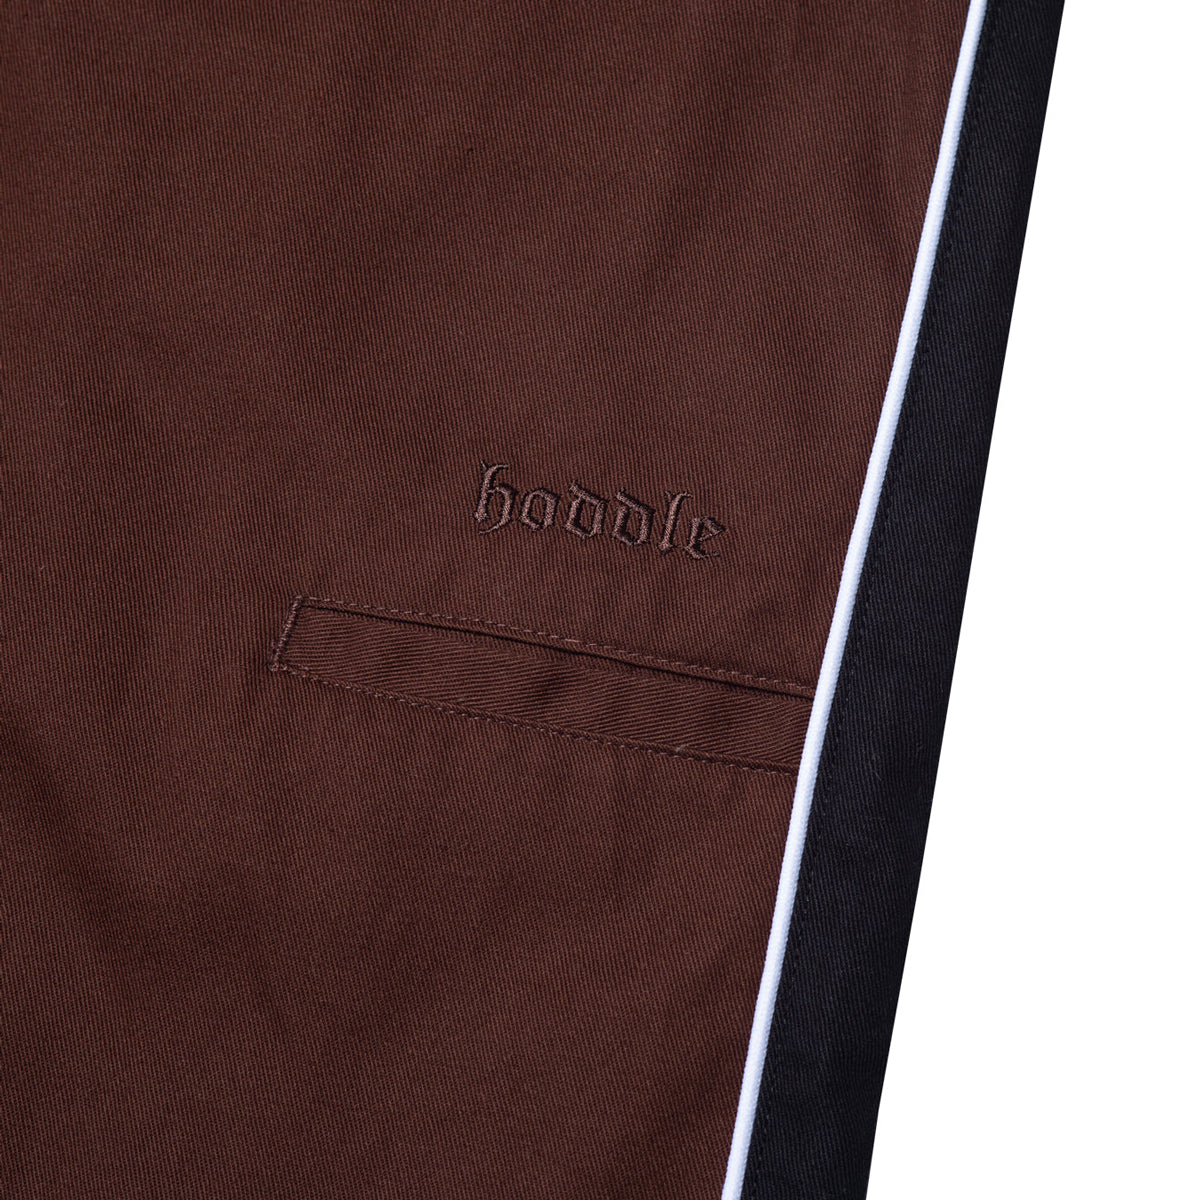 Hoddle Bermuda Shorts - Chocolate/Black image 3